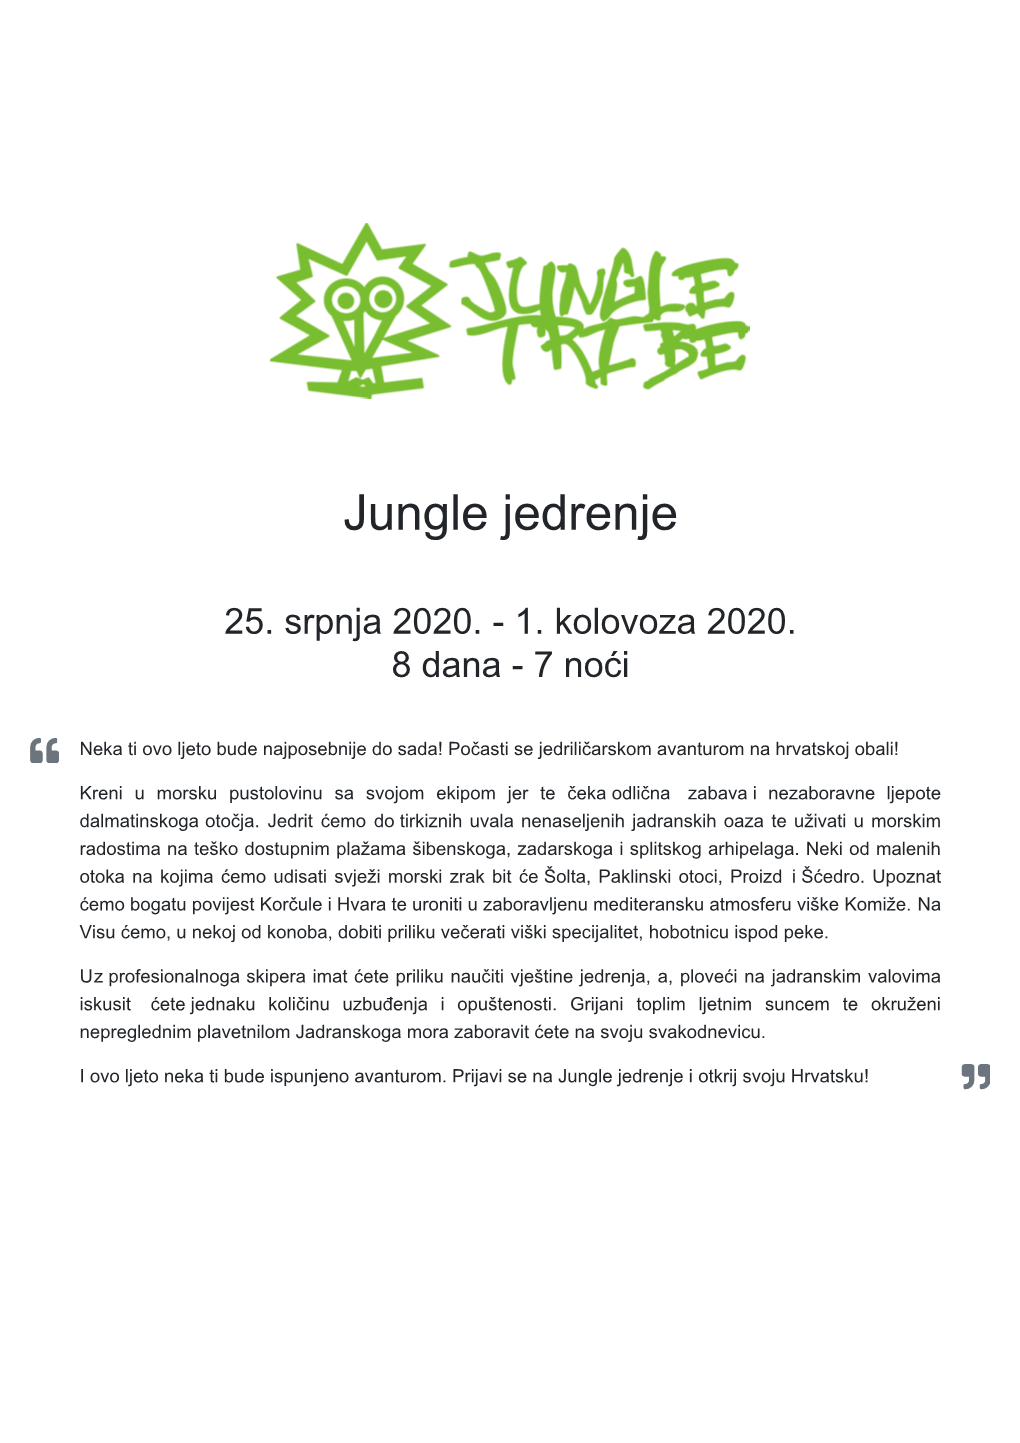 Jungle Jedrenje